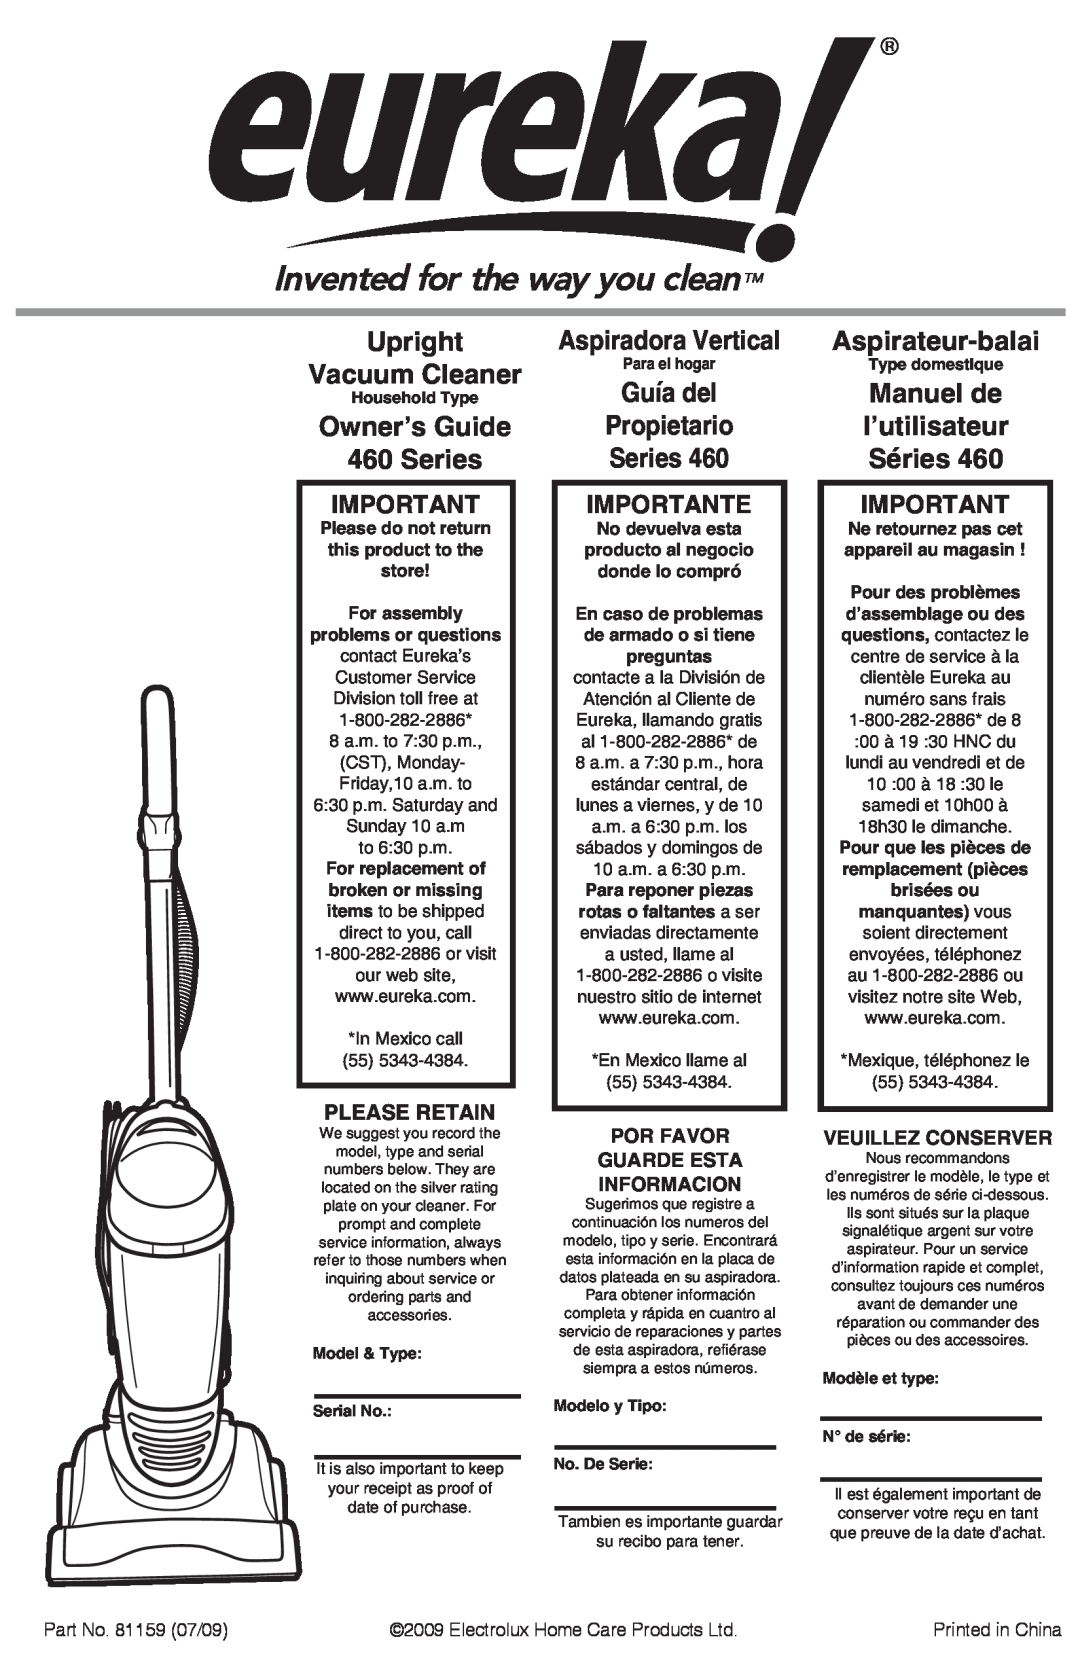 Eureka manual Upright Vacuum Cleaner, Owner’s Guide 460 Series, Aspiradora Vertical, Guía del Propietario Series 